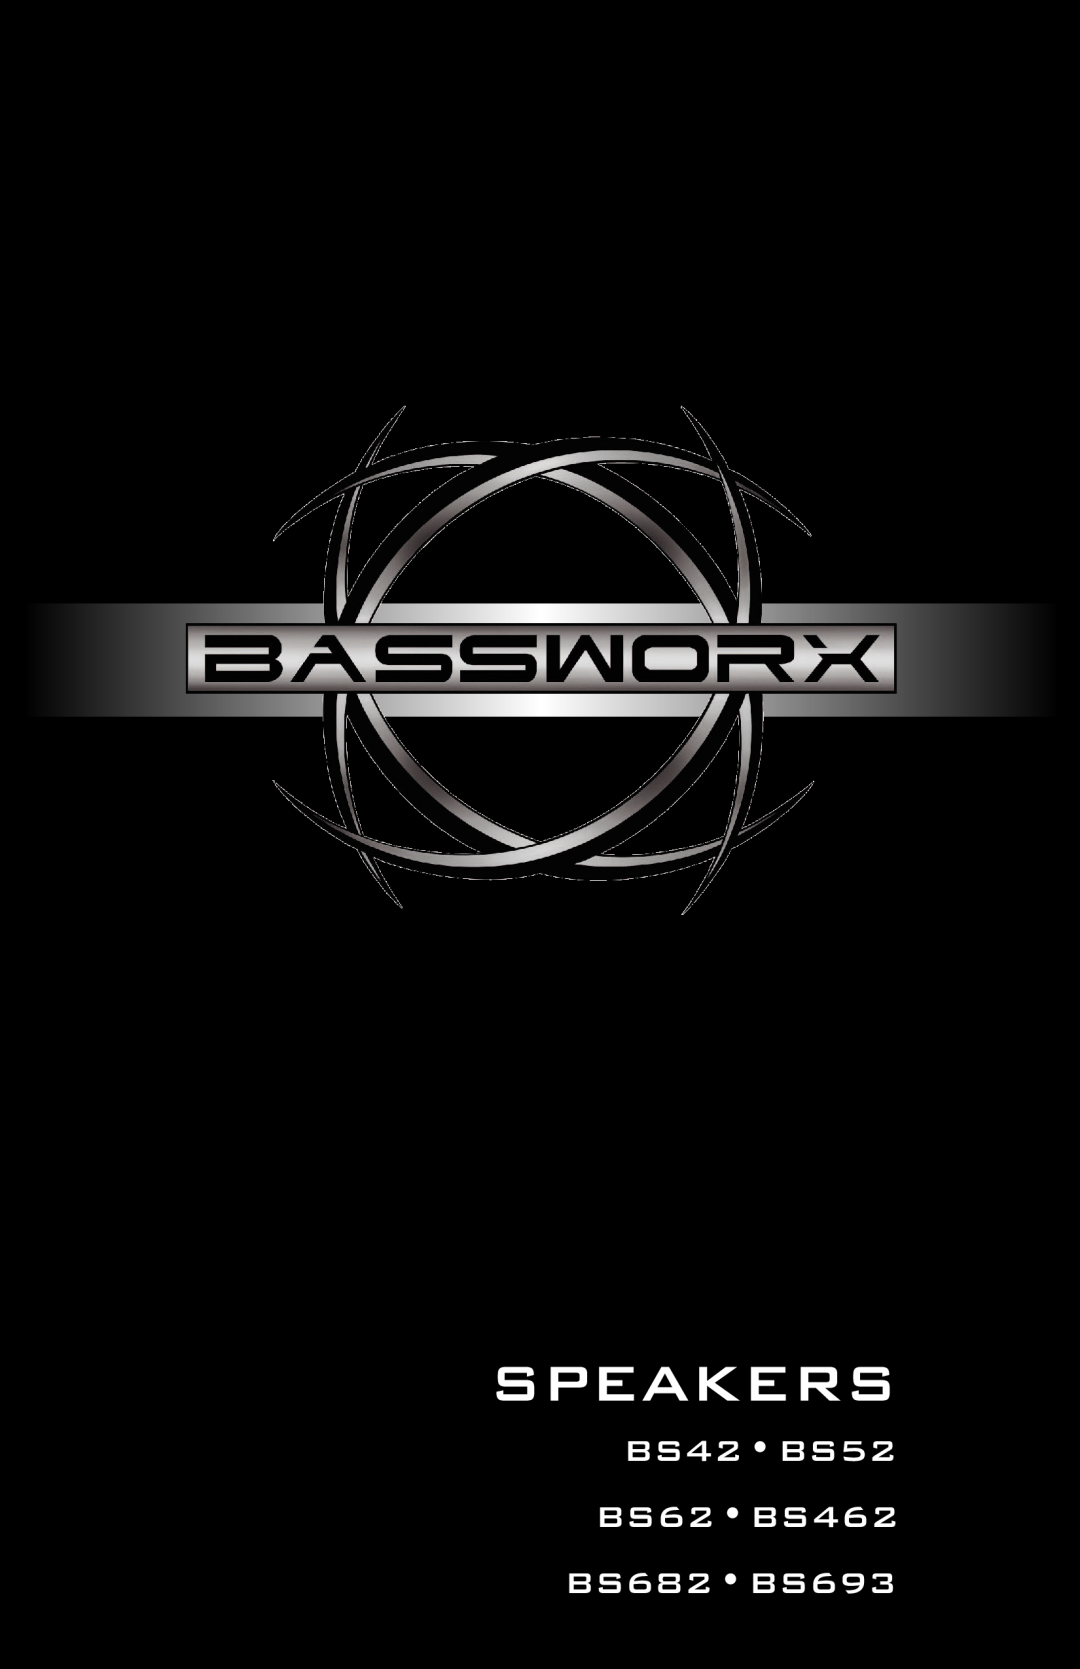 Bassworx manual Speakers, BS42BS52 BS62 BS462 BS682 BS693 